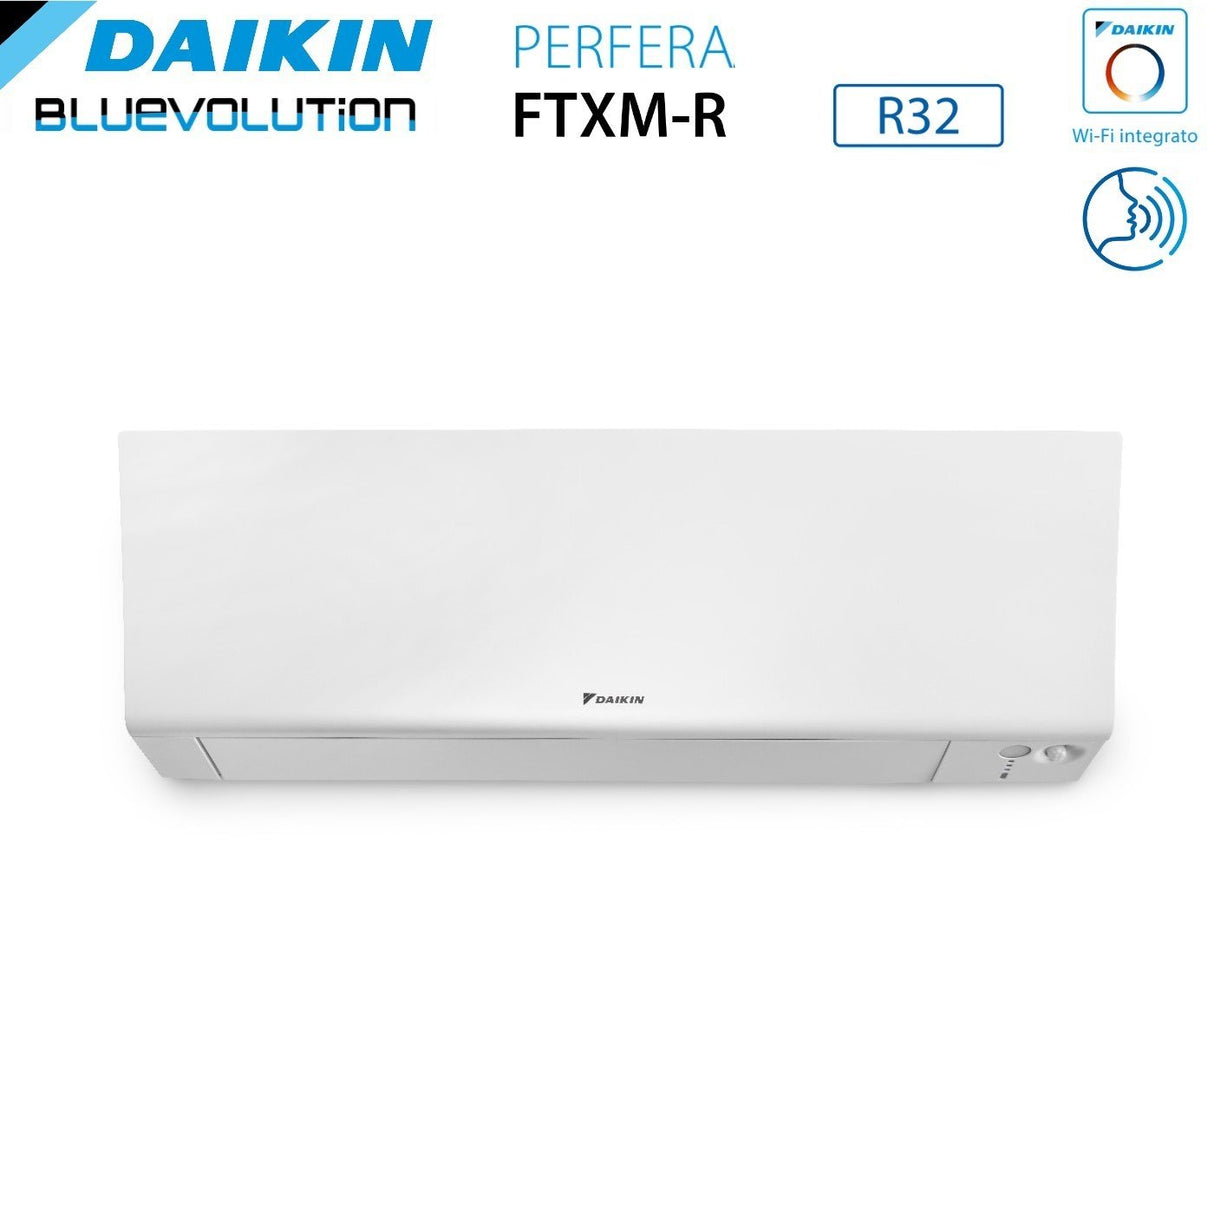 immagine-3-daikin-climatizzatore-condizionatore-daikin-bluevolution-quadri-split-inverter-serie-ftxmr-perfera-wall-79921-con-4mxm80a-r-32-wi-fi-integrato-70009000900021000-garanzia-italiana